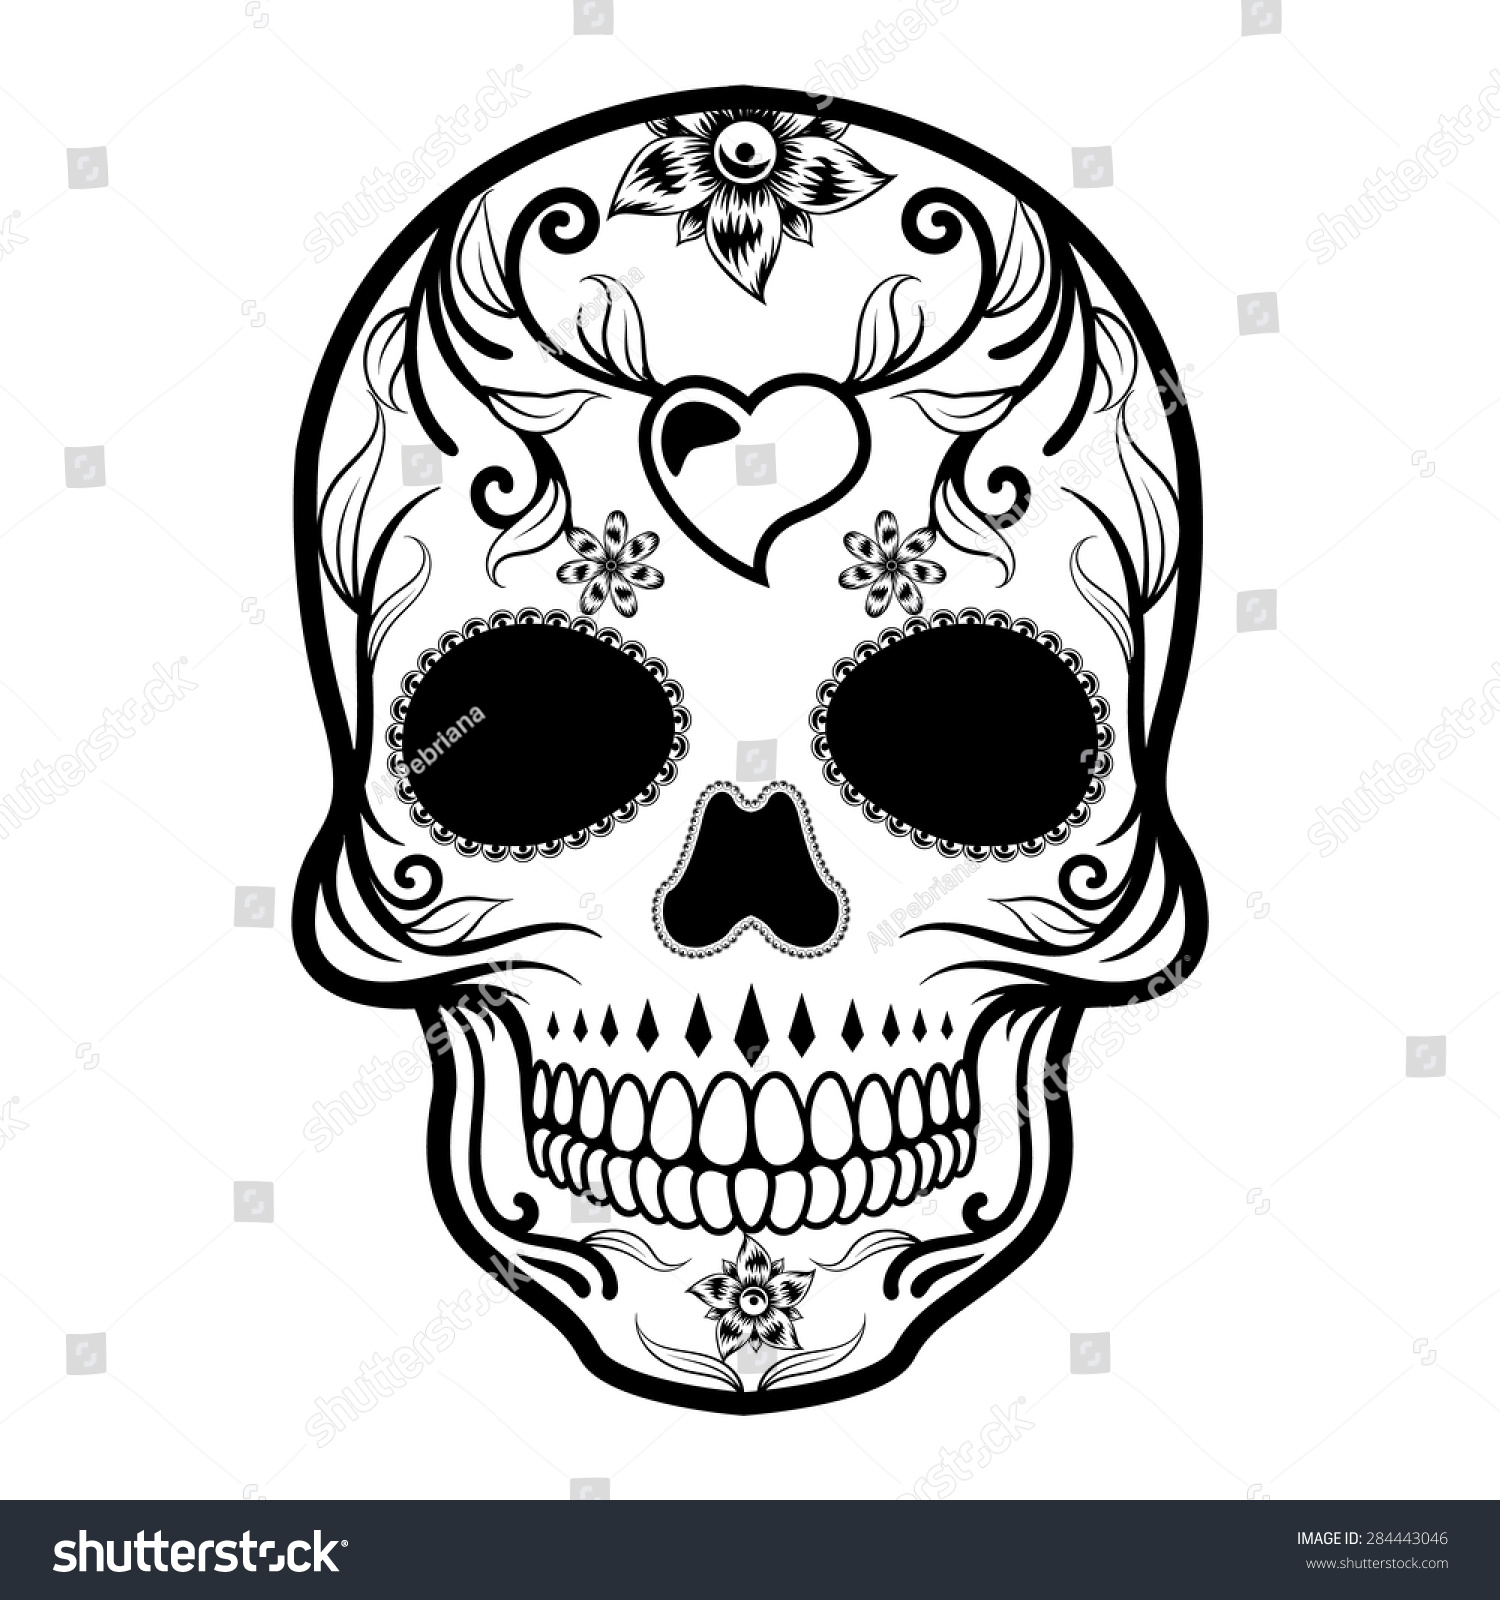 Day Of The Dead Skull Stock Vector 284443046 : Shutterstock